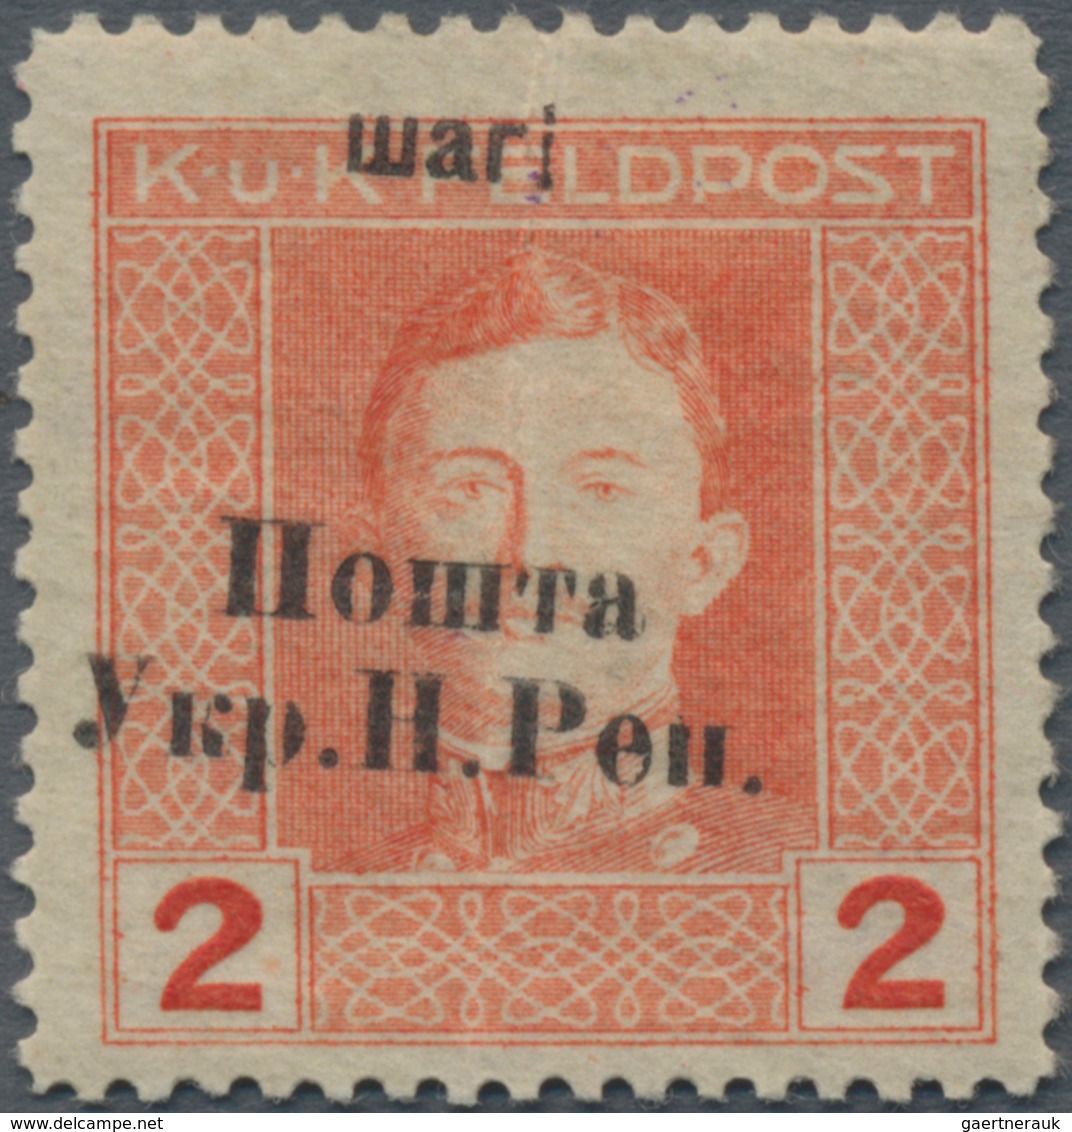 Westukraine: 1919, Postage Stamp. Austrian-Hungarian Field Post With Overprint 2 Schari With Varity - Oekraïne